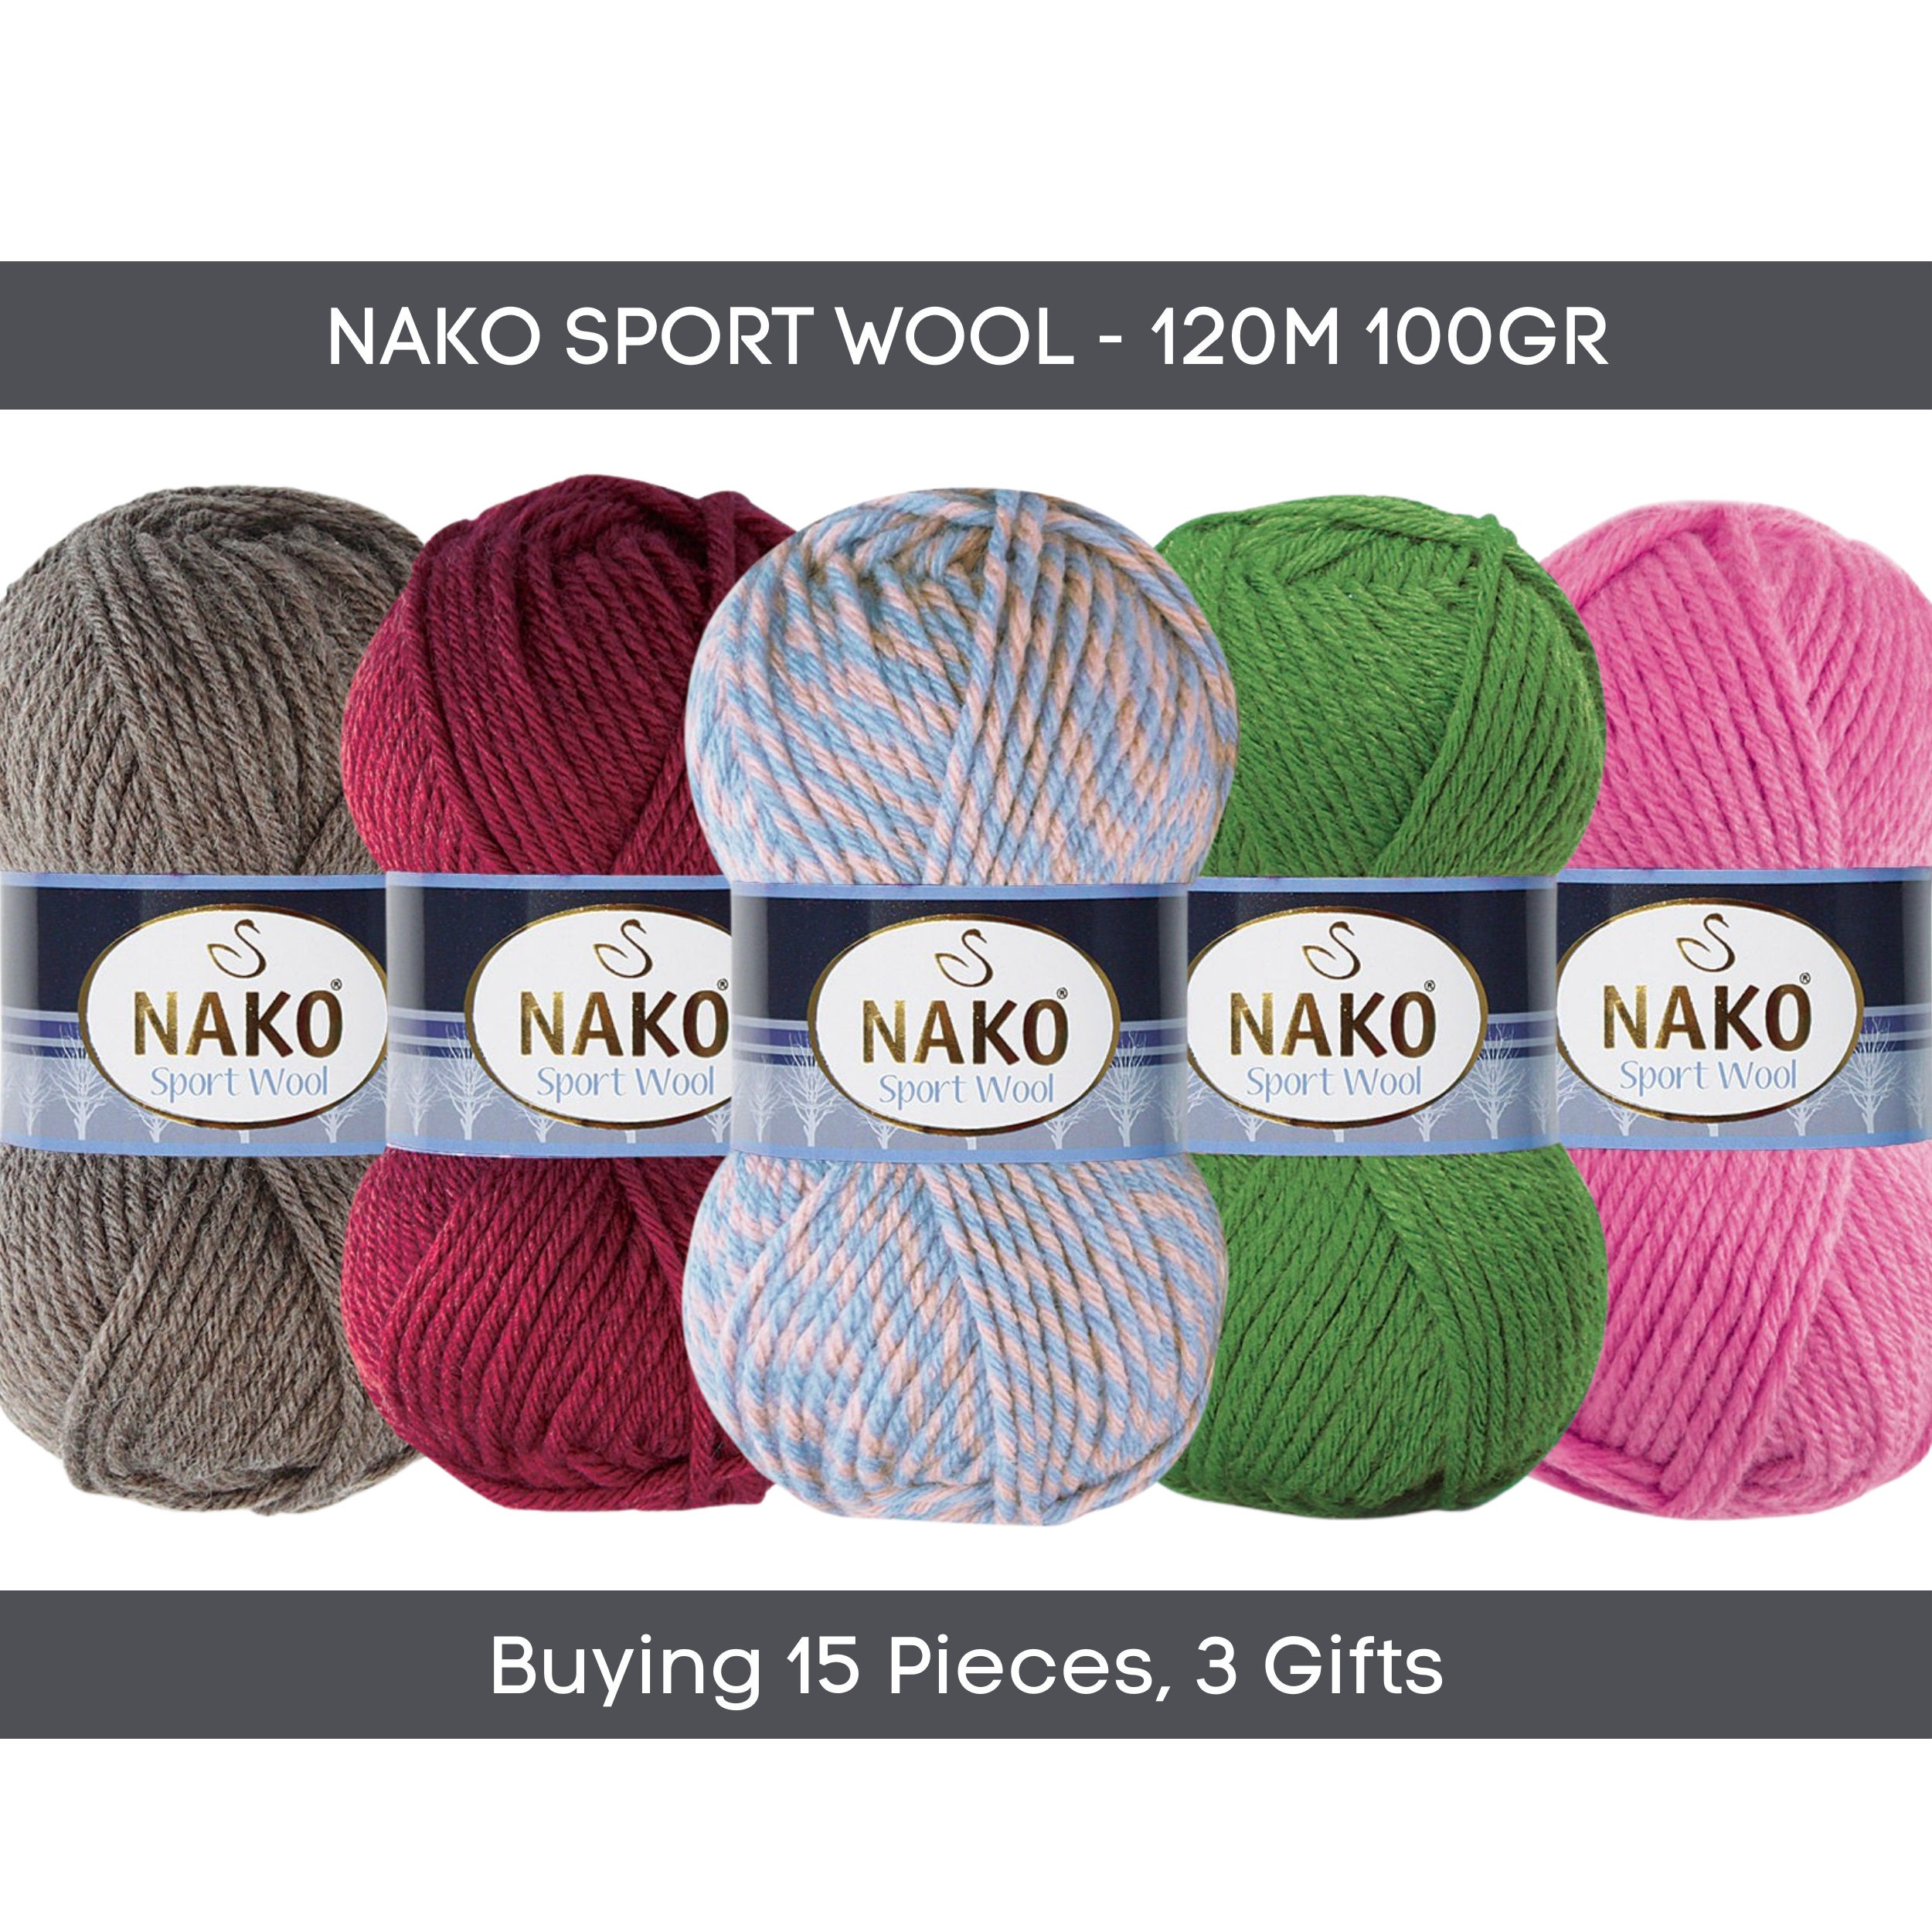 Wool Yarn NAKO SPORT WOOL, Chunky Yarn, Bulky Yarn, Size 5